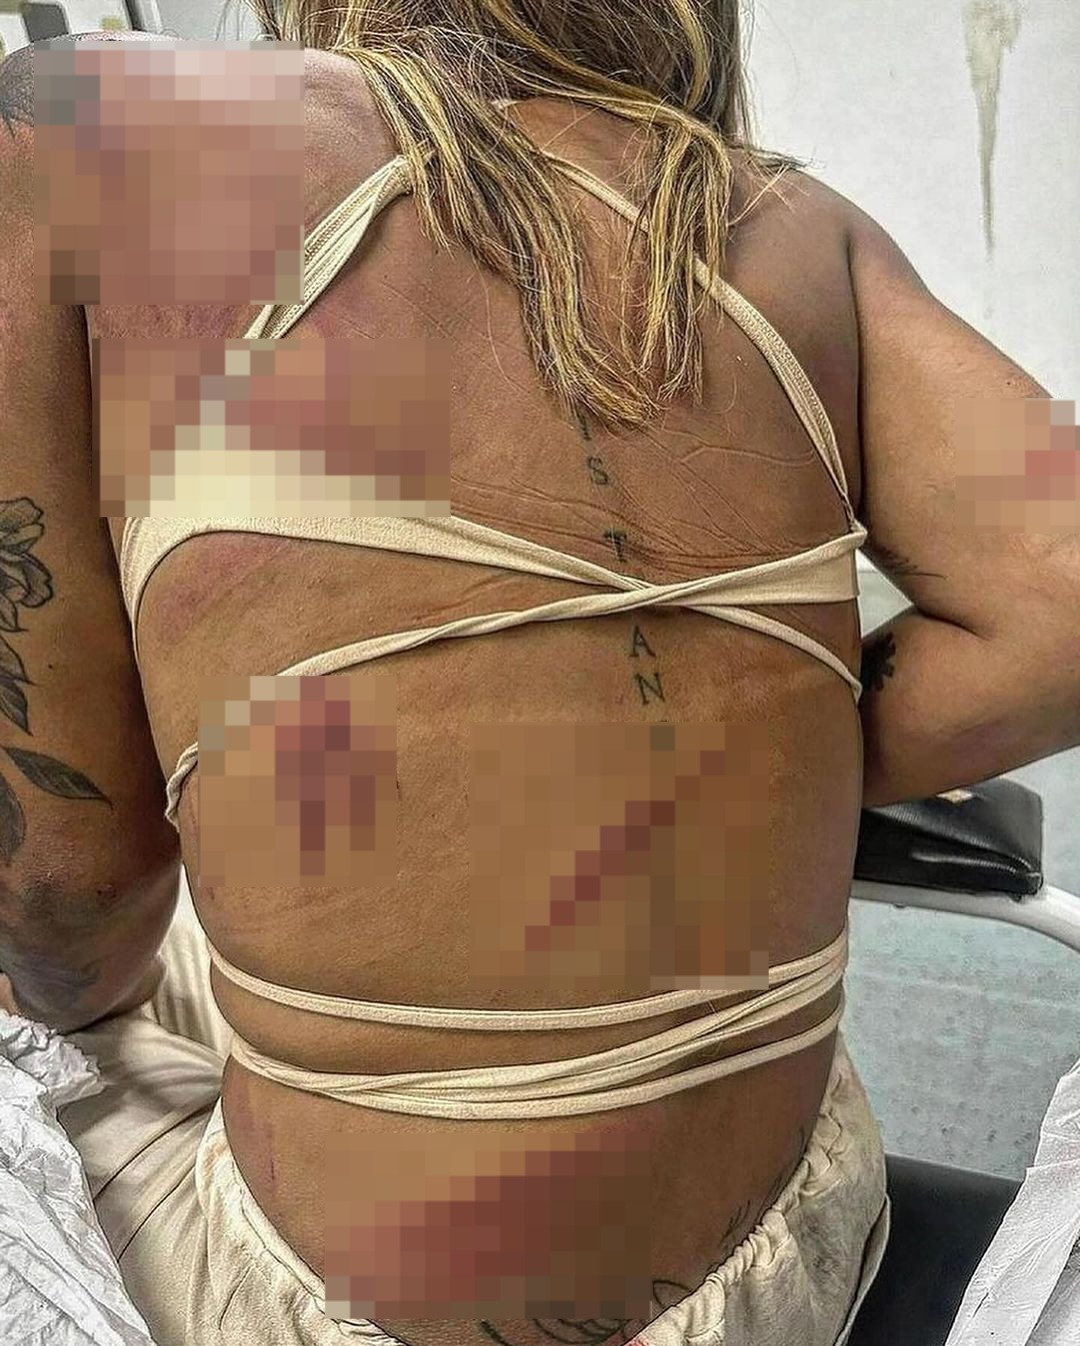 Mulher trans espancada na Região dos Lagos.